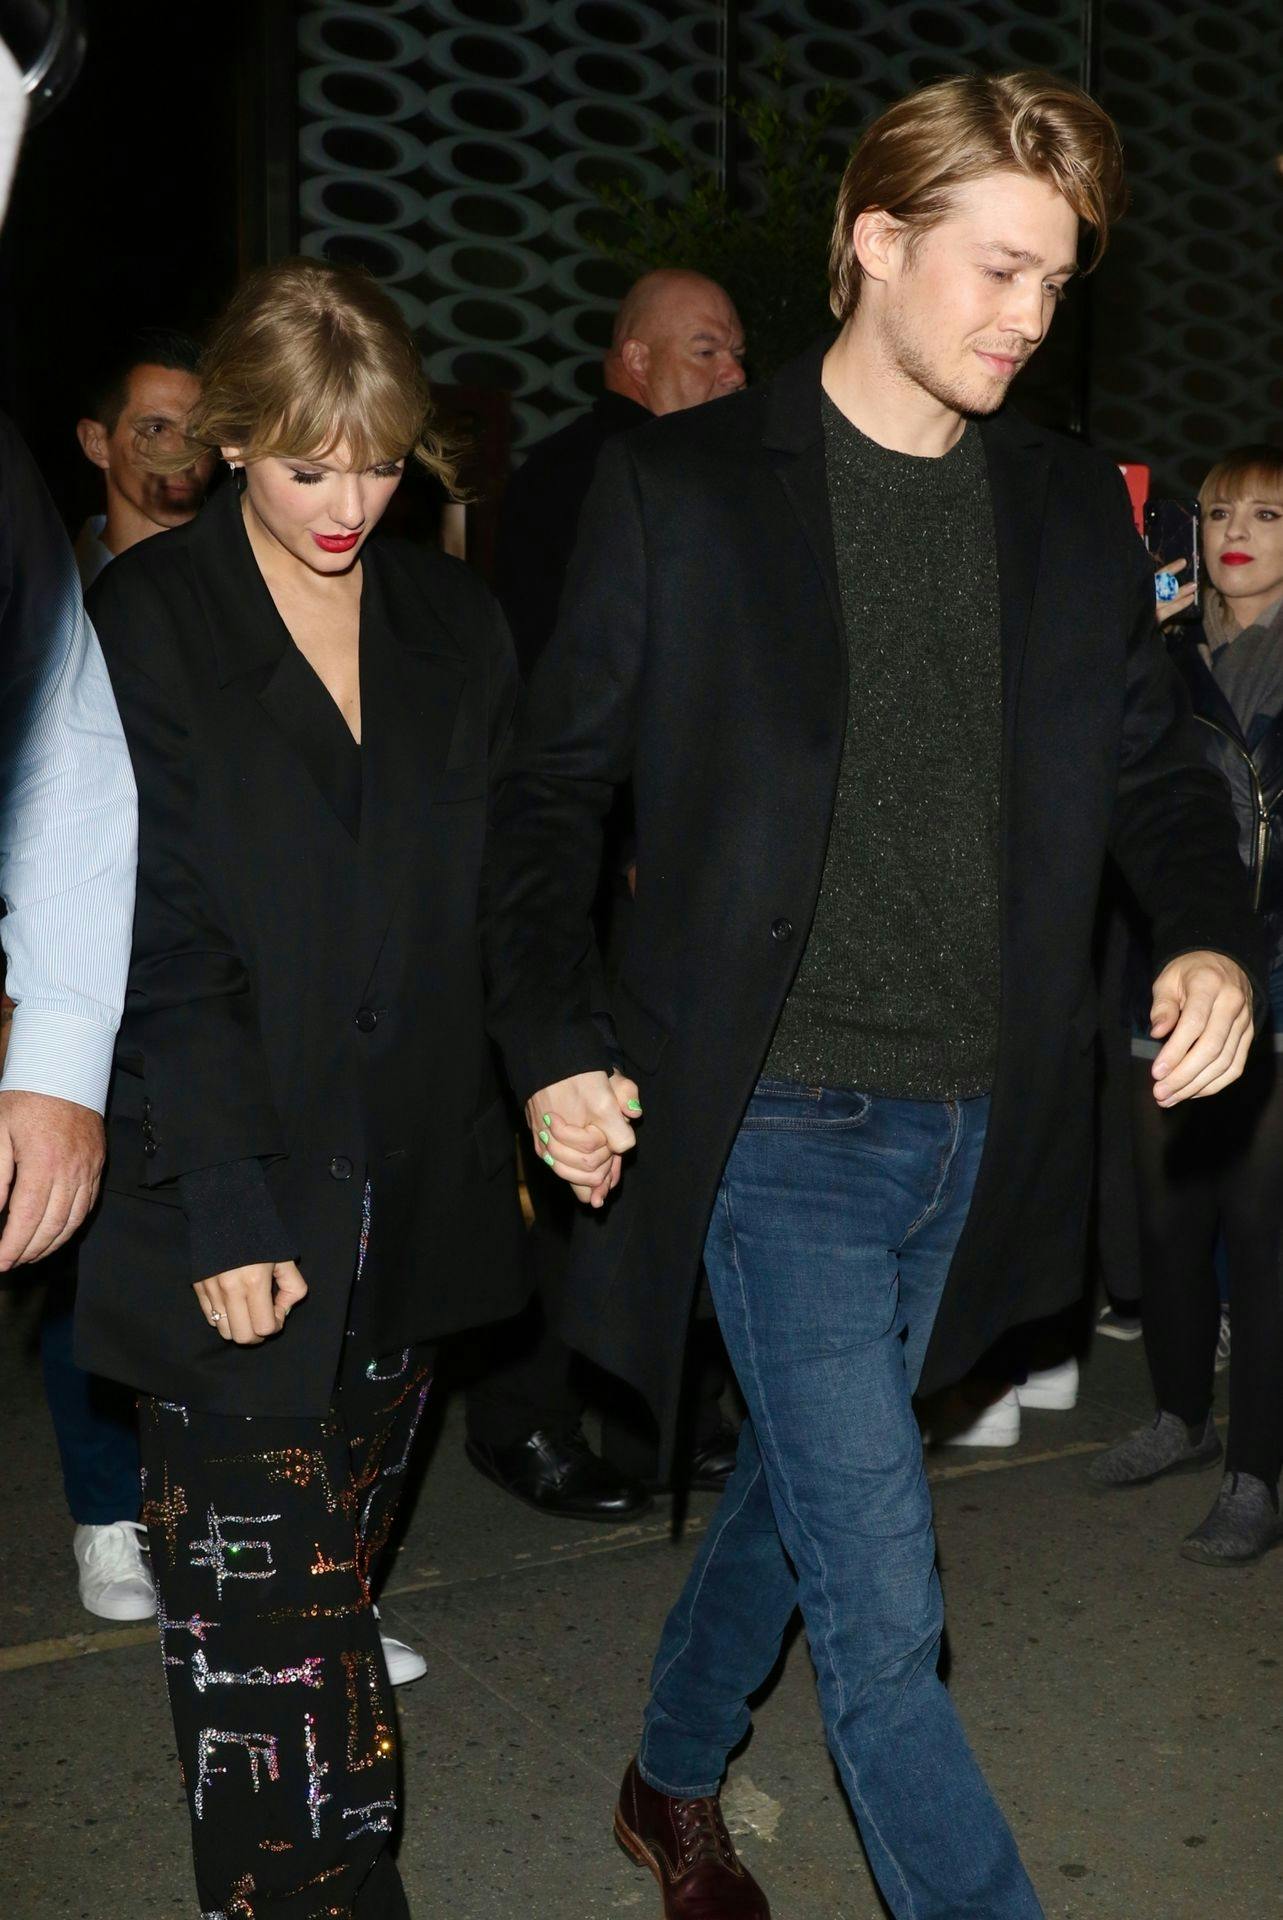 Joe Alwyn og Taylor Swift er nu fortid efter seks års forhold, skriver de amerikanske medier.